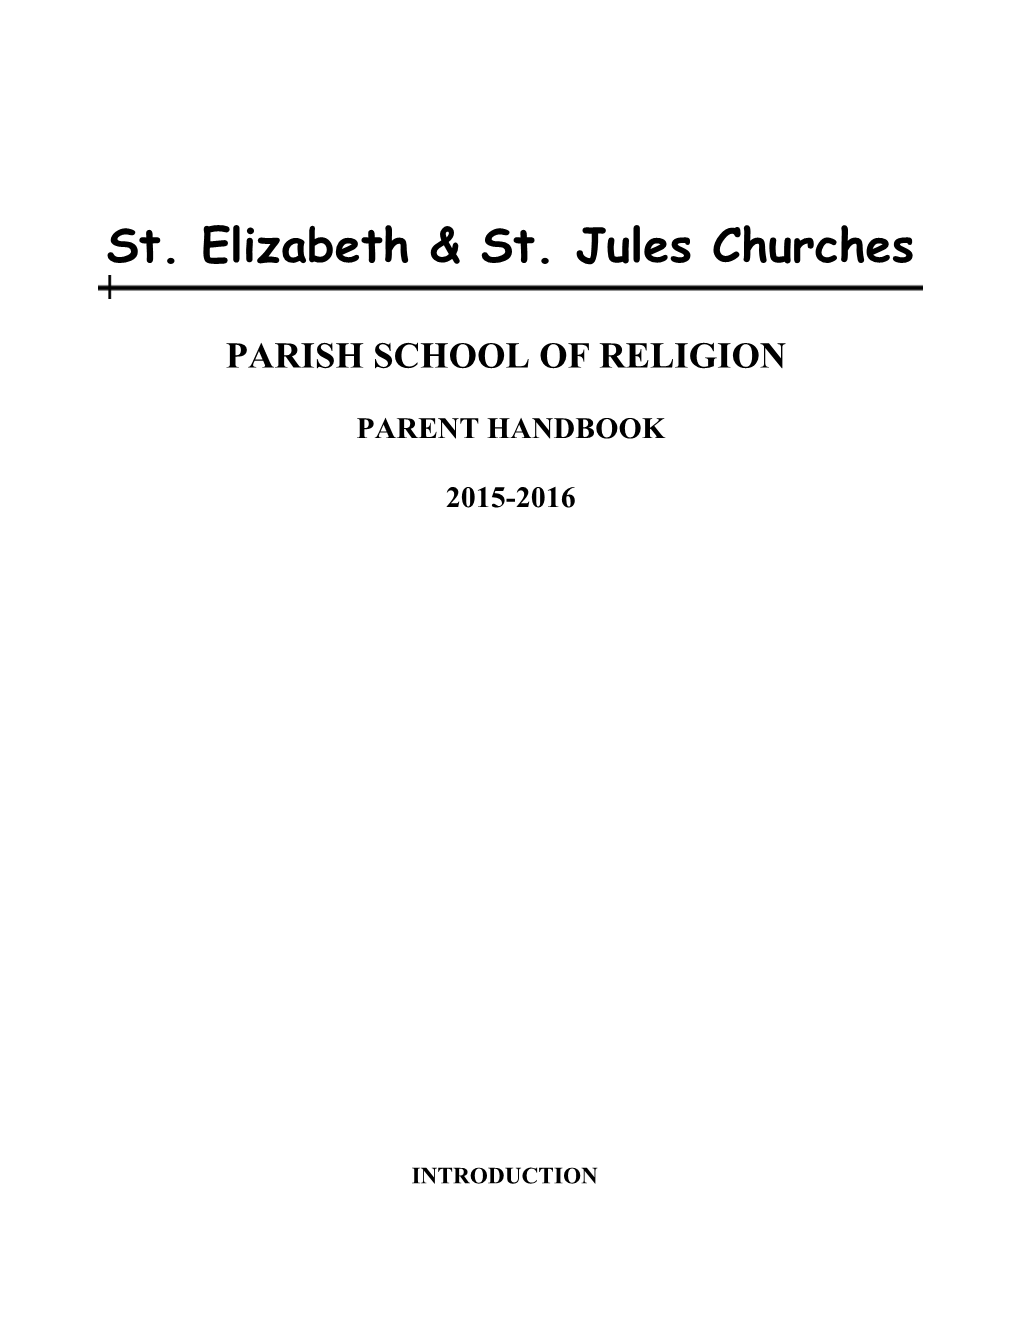 Parish School of Religion